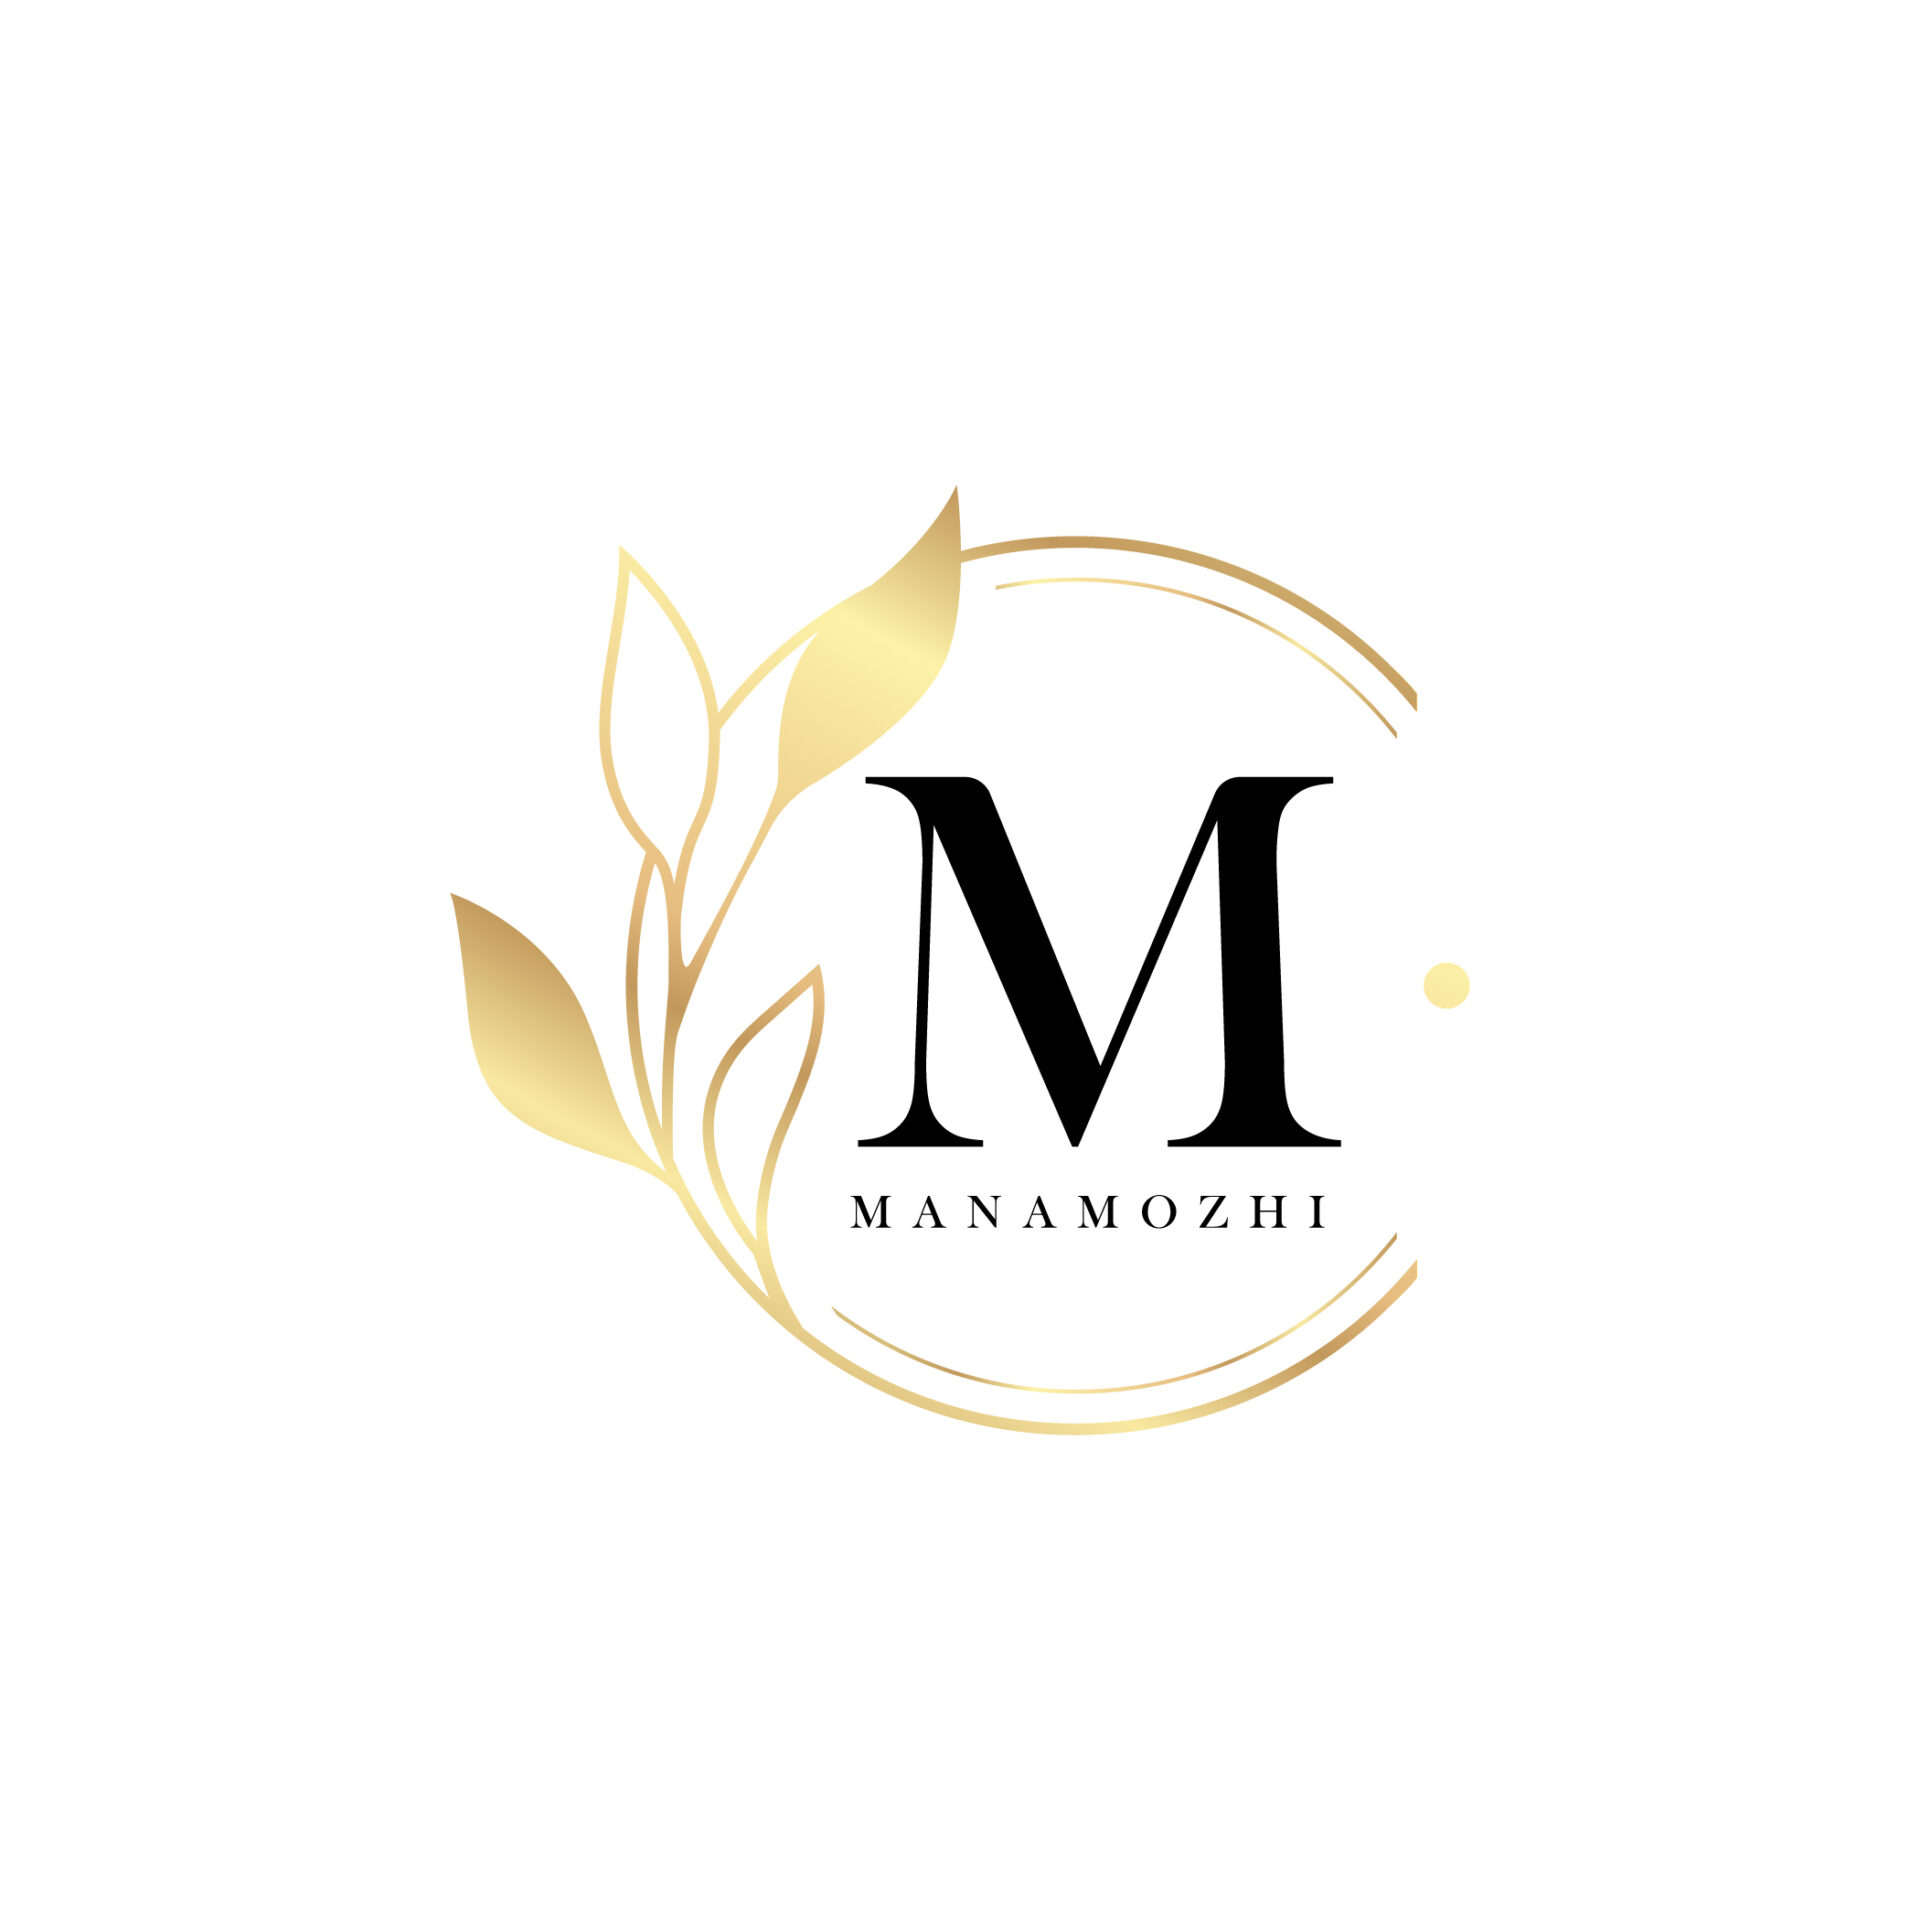 Logo Manamozhi by digital rinky